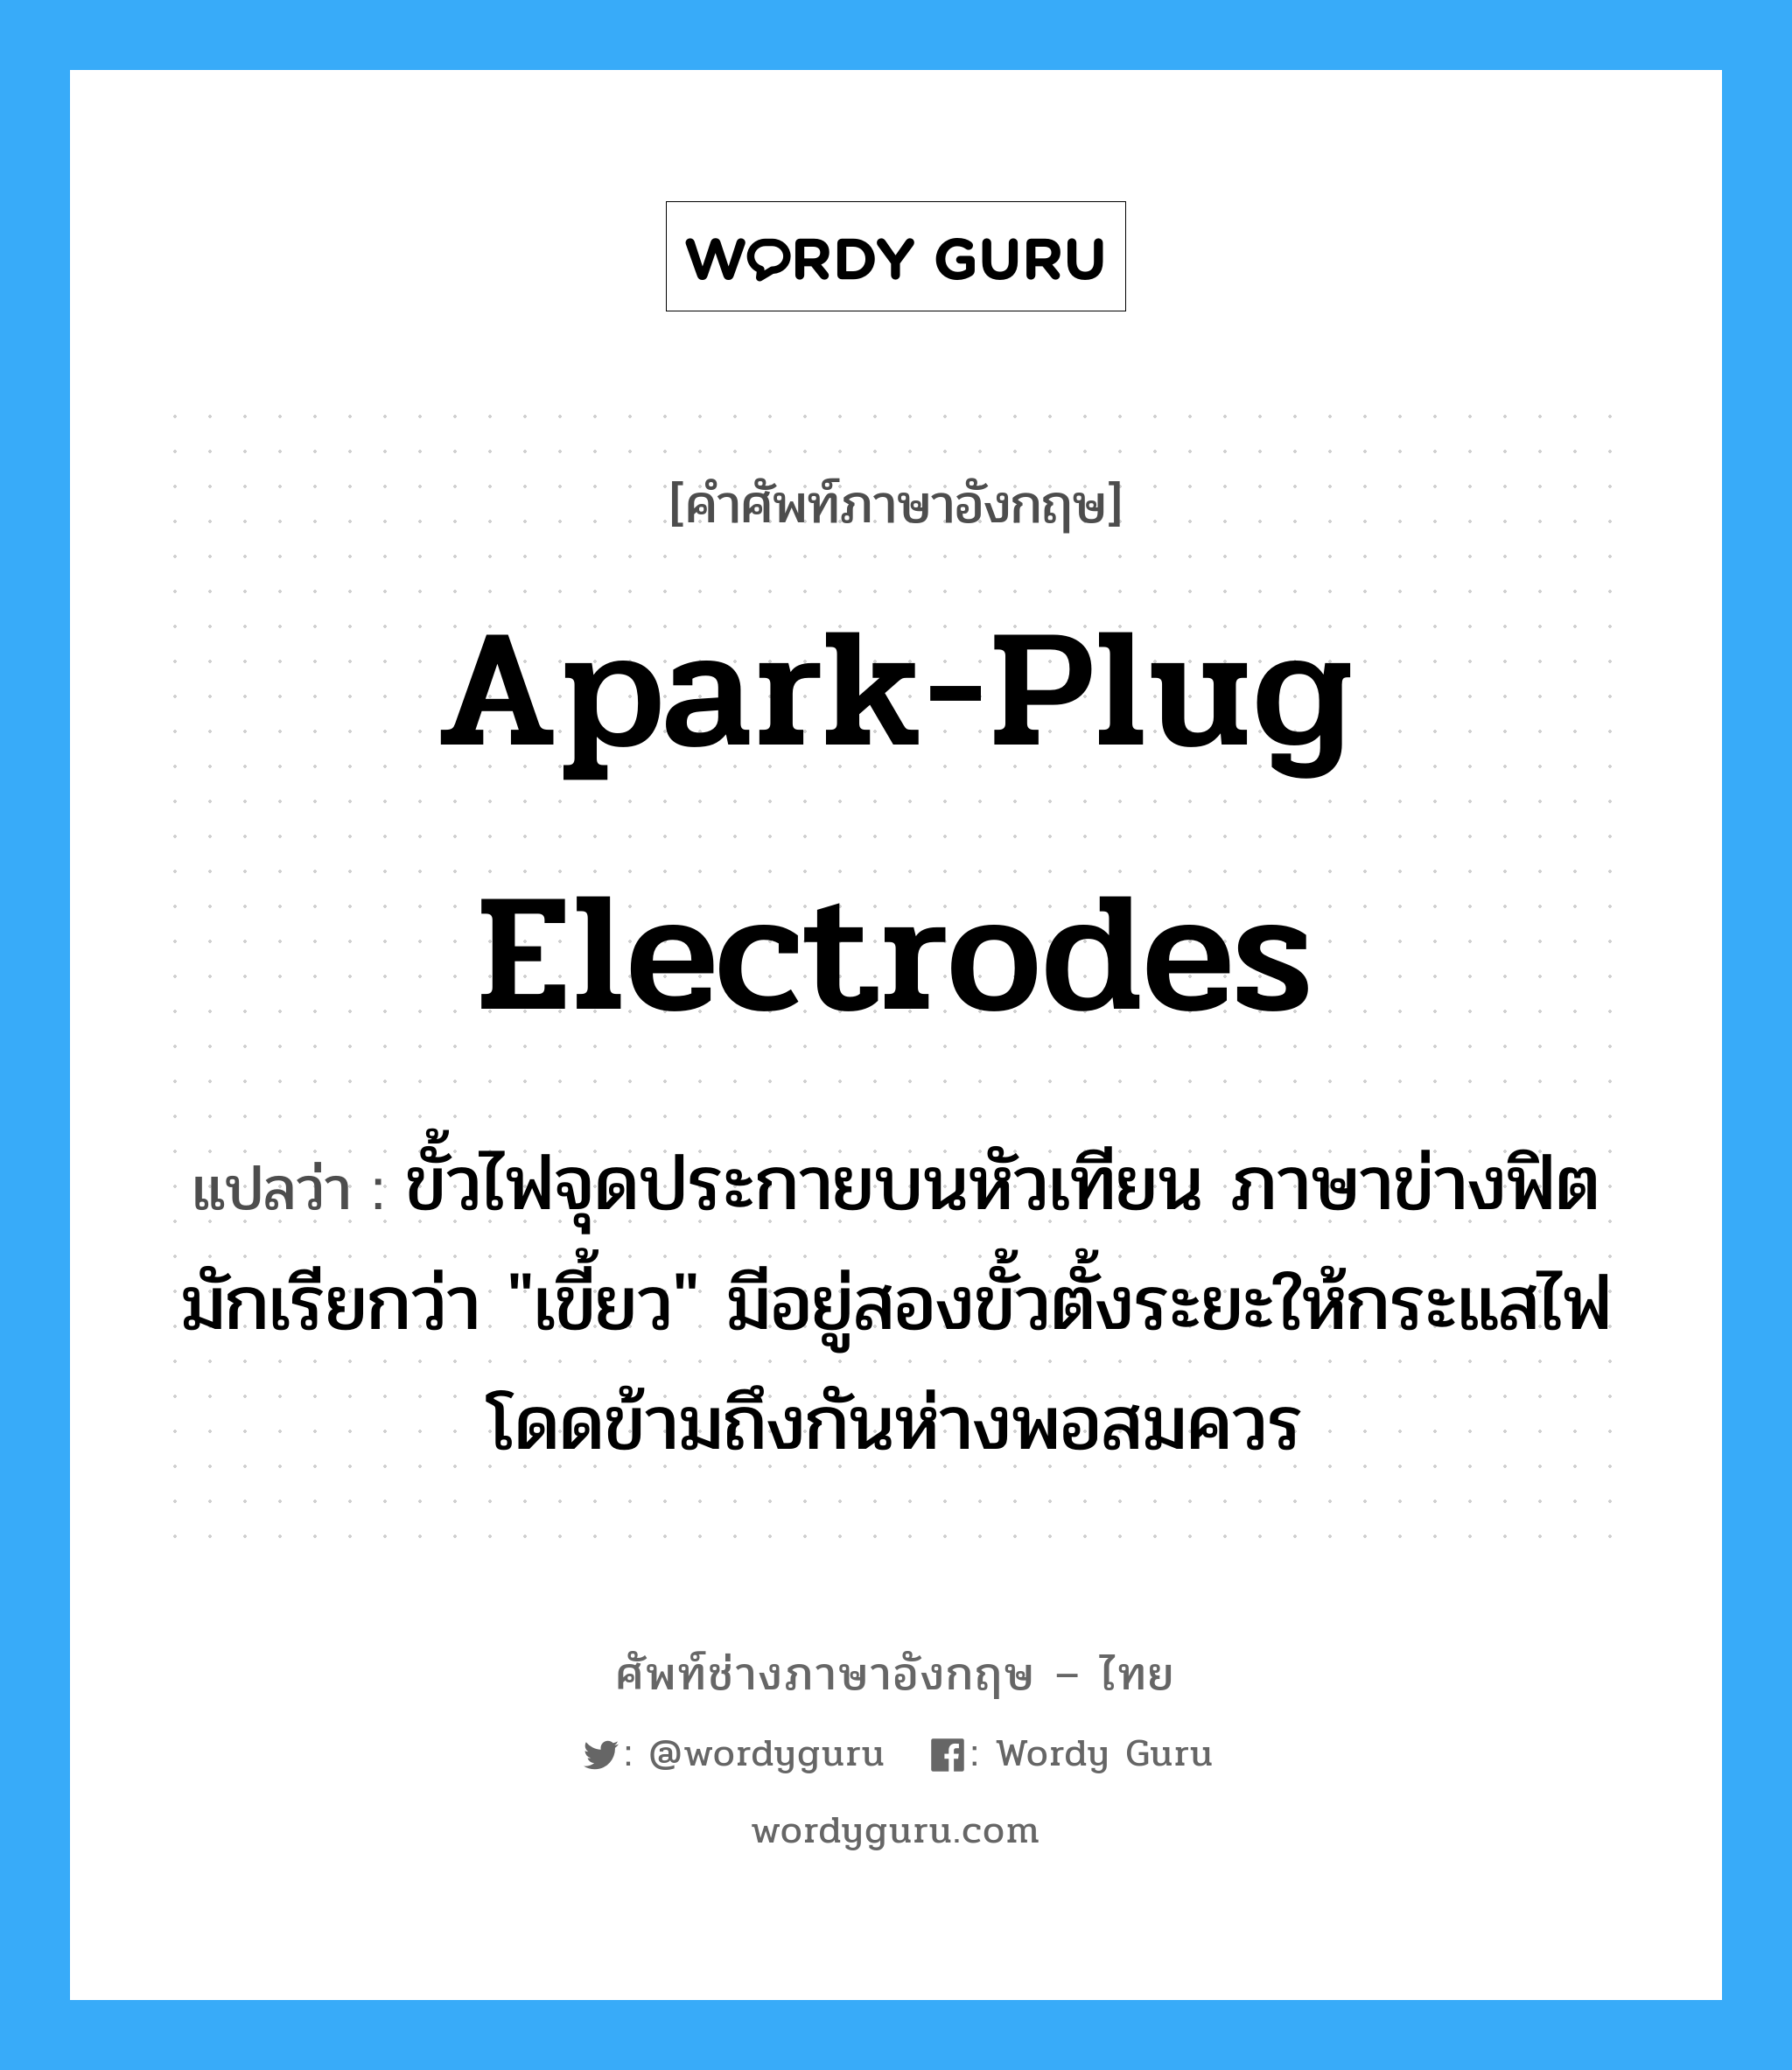 apark-plug electrodes แปลว่า?, คำศัพท์ช่างภาษาอังกฤษ - ไทย apark-plug electrodes คำศัพท์ภาษาอังกฤษ apark-plug electrodes แปลว่า ขั้วไฟจุดประกายบนหัวเทียน ภาษาข่างฟิตมักเรียกว่า "เขี้ยว" มีอยู่สองขั้วตั้งระยะให้กระแสไฟโดดข้ามถึงกันห่างพอสมควร